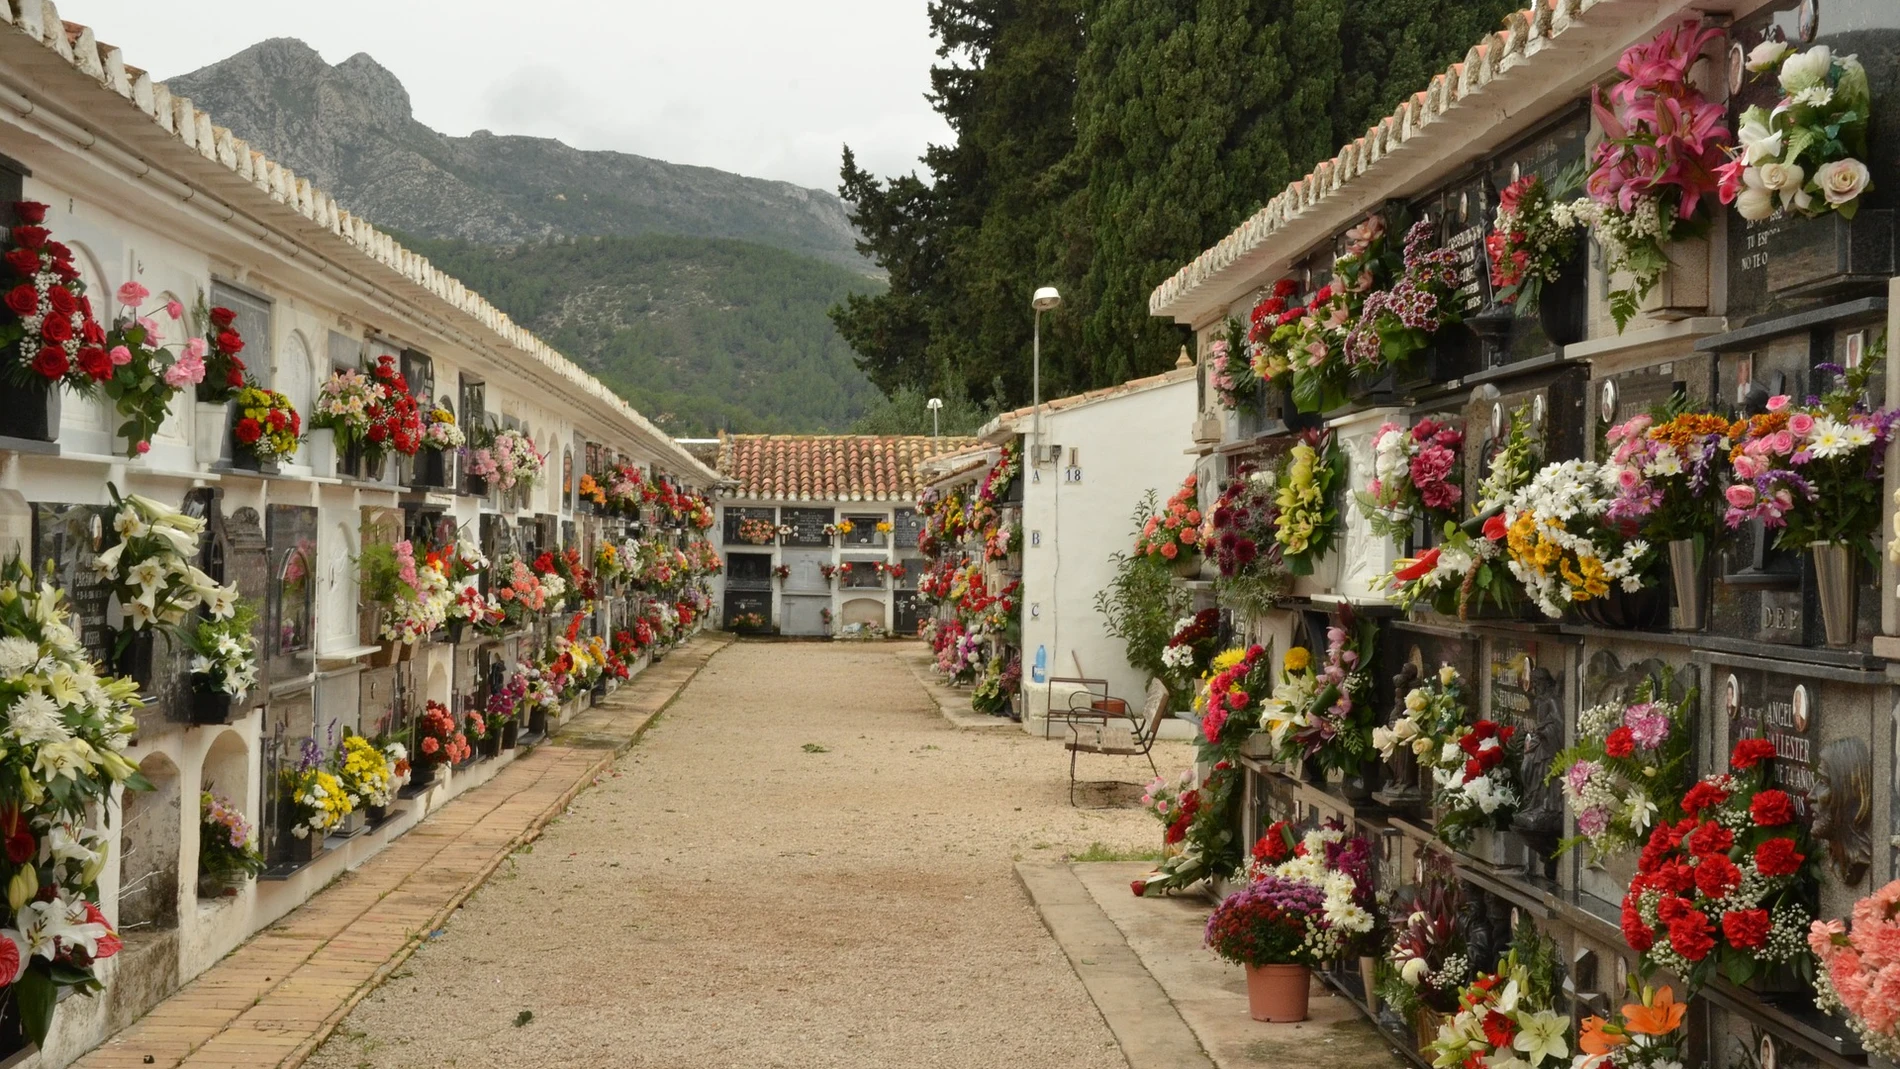 Un albañil acude al cementerio a trabajar y se encuentra la tumba de su hijo profanada